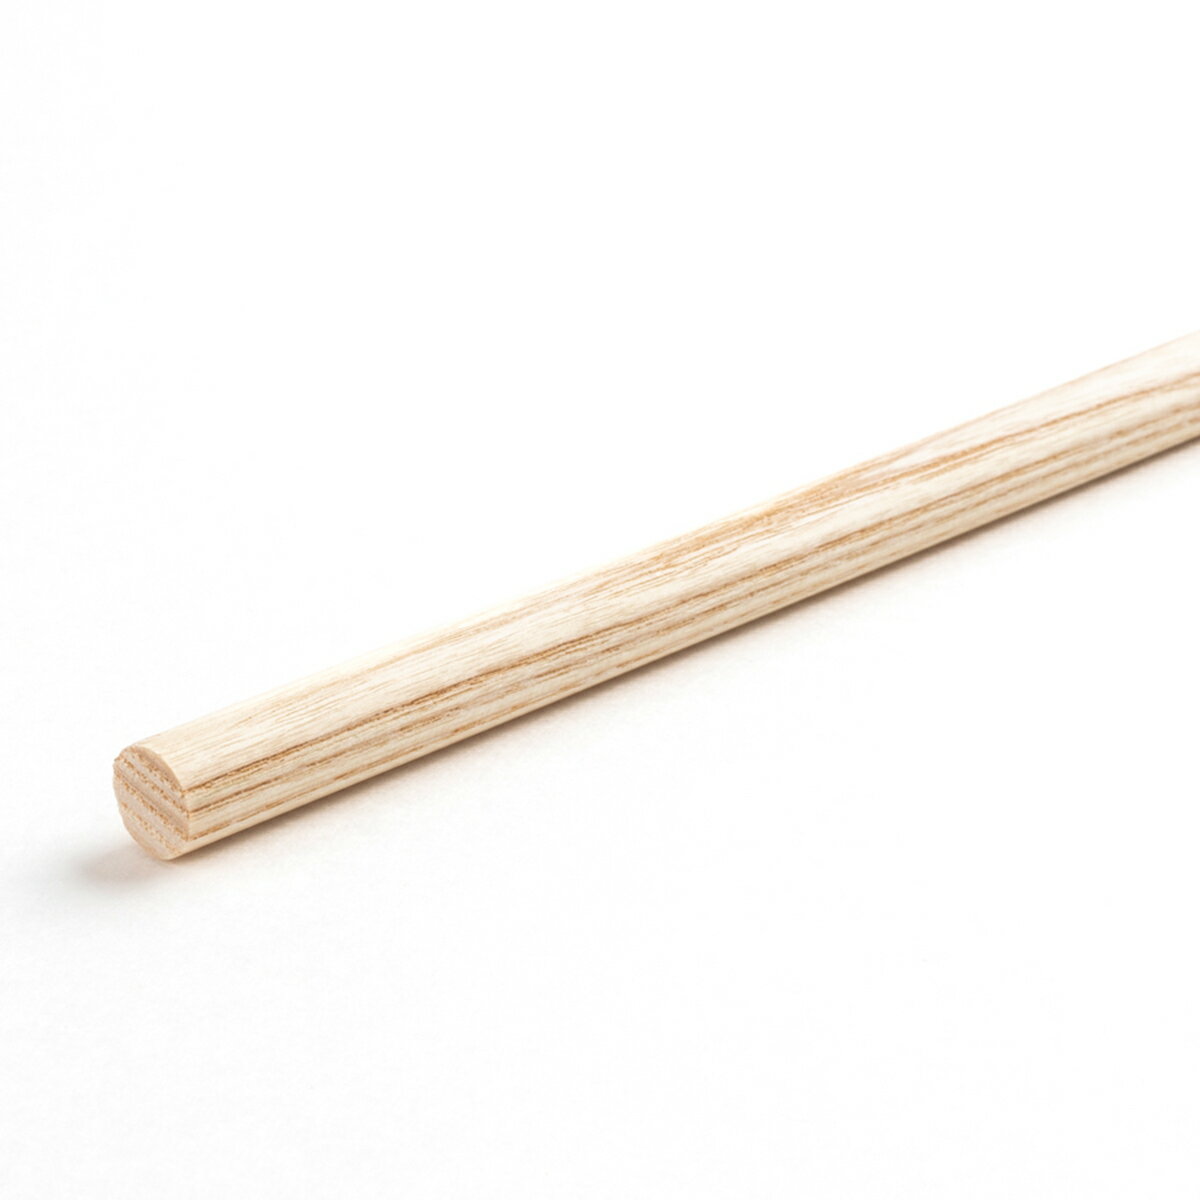 ホワイトアッシュ丸棒 直径10mm 910mm 1820mm DIY 木材 DIY用丸棒材 クラフト用丸棒 ウッドカービング用材 ウッドクラフト材料 高品質アッシュ丸棒